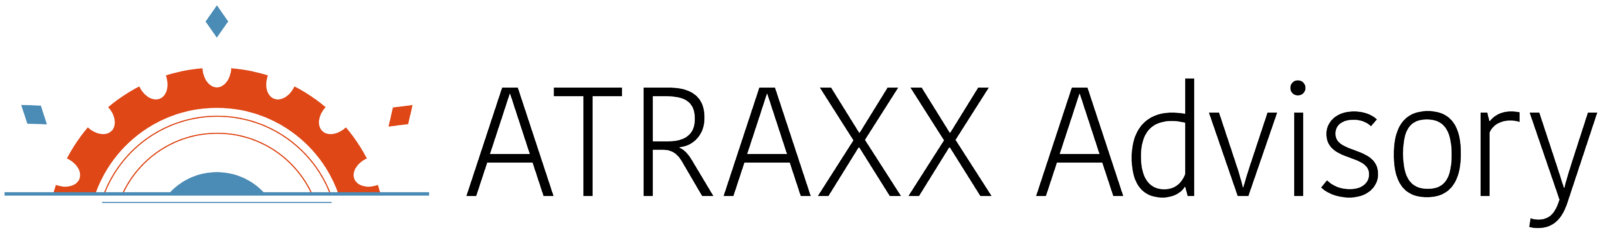 ATRAXX Advisory Tagline - high res